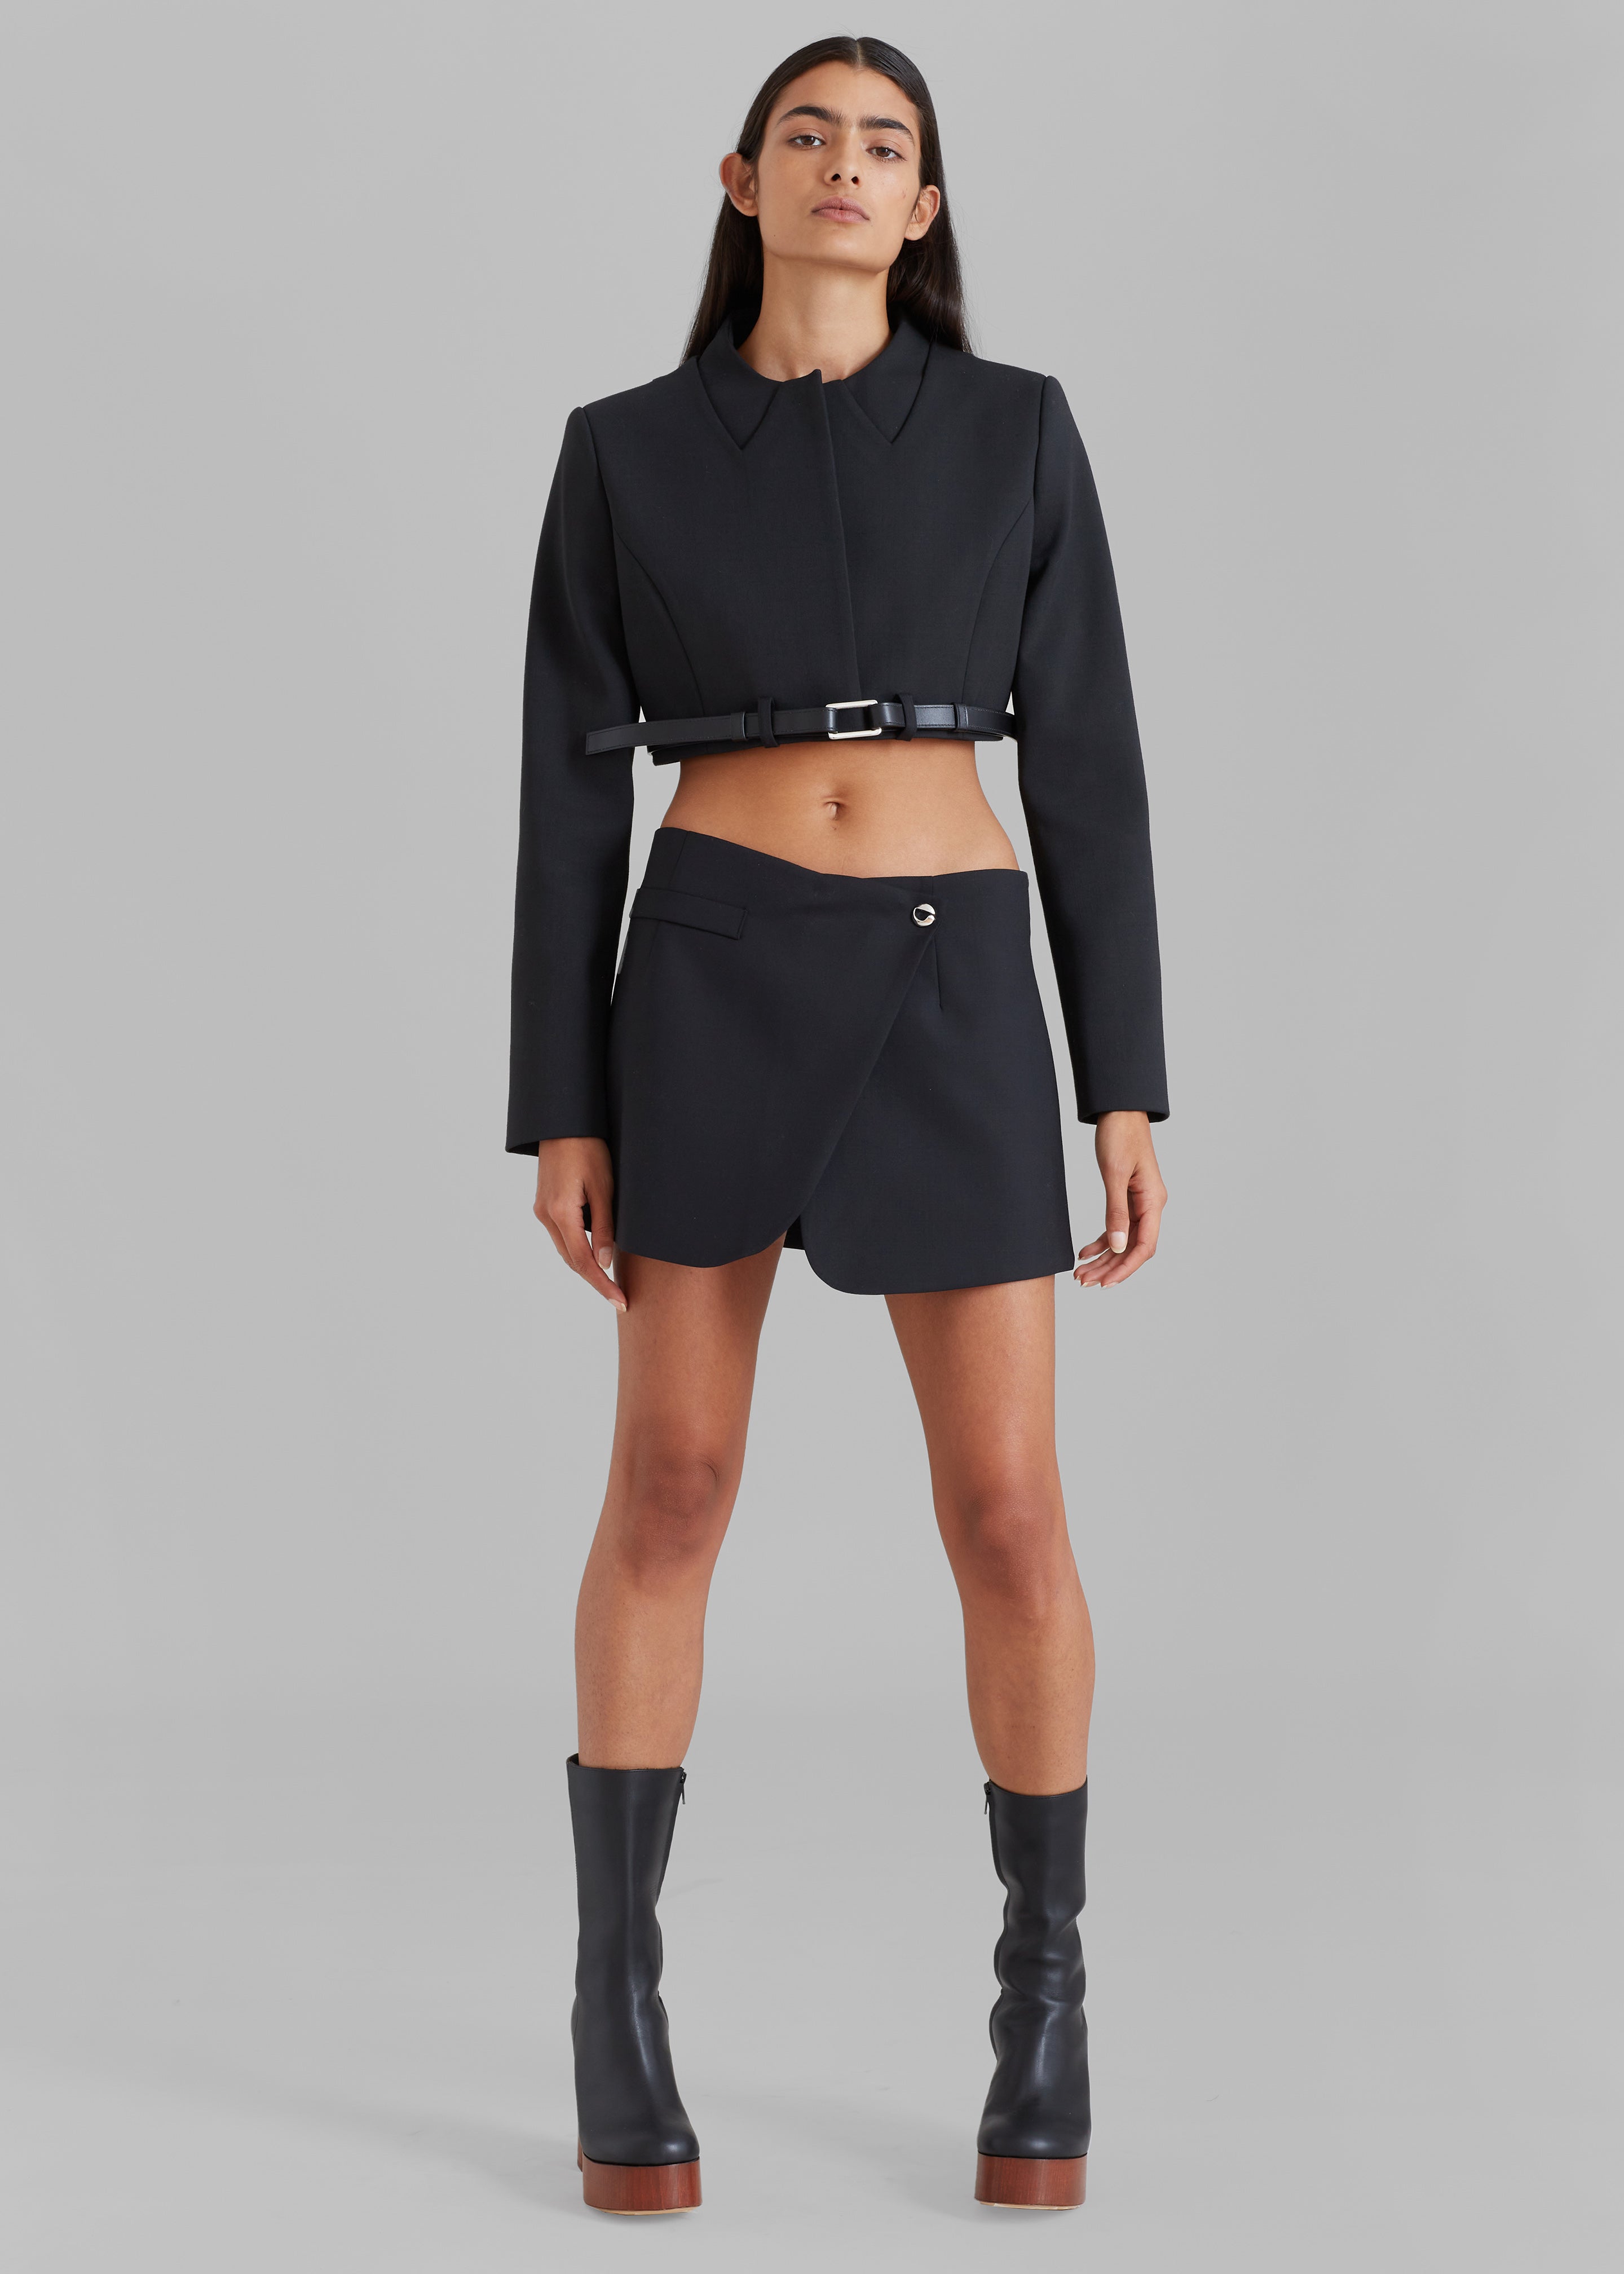 Coperni Tailored Mini Skirt - Black - 9